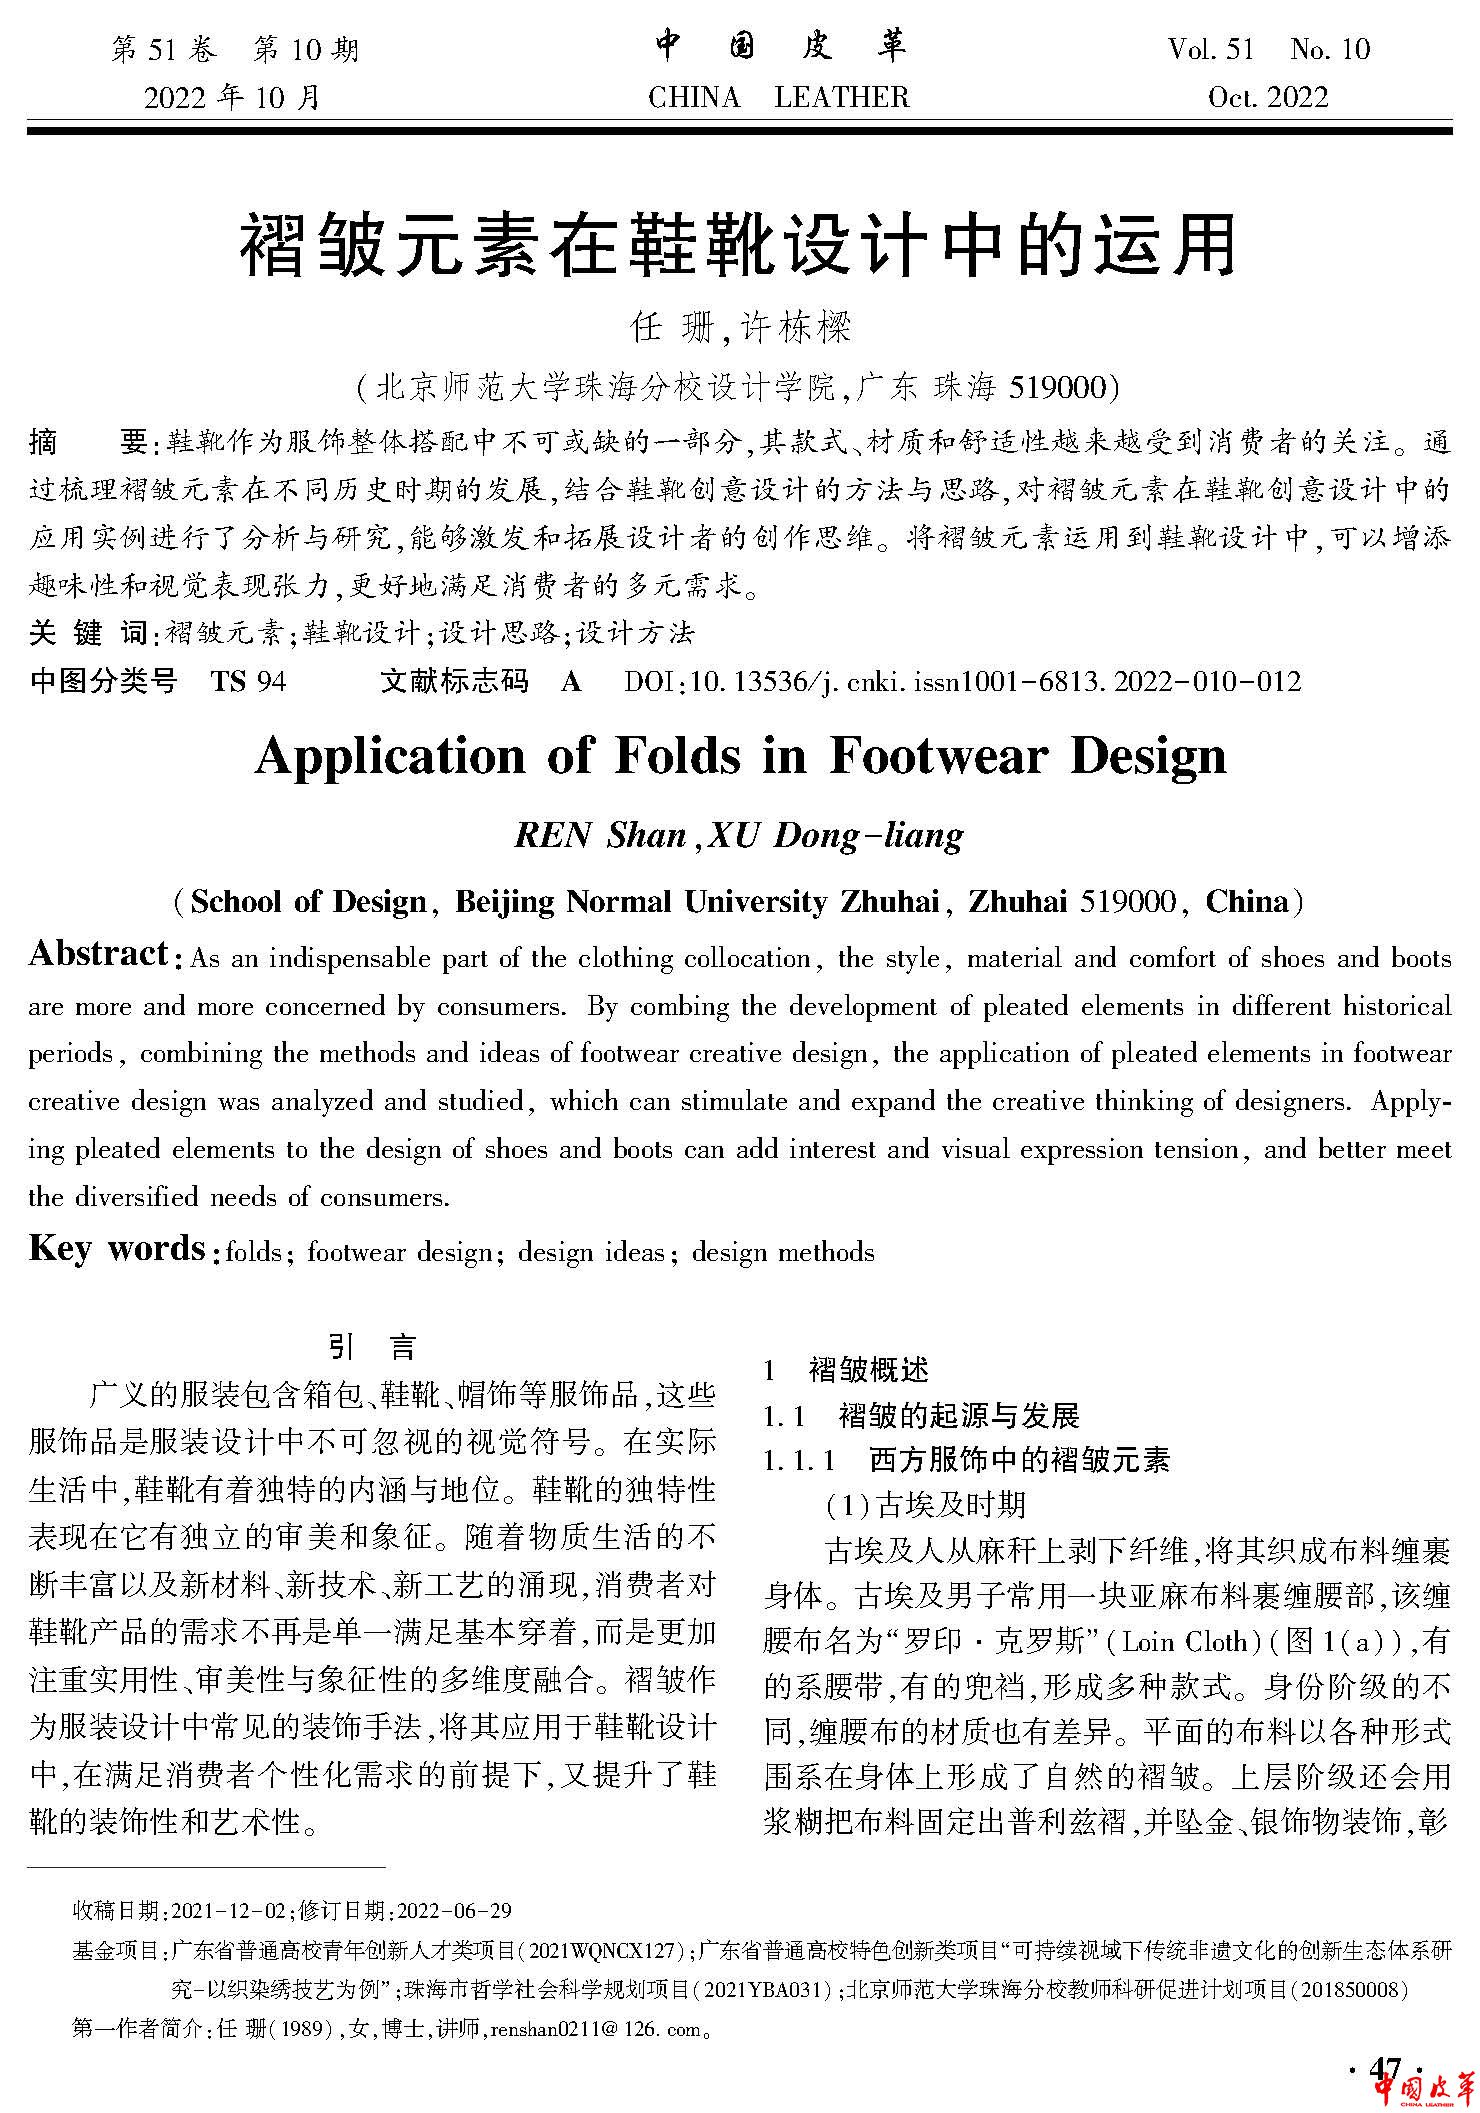 页面提取自－中国皮革2022年第10期-4.jpg